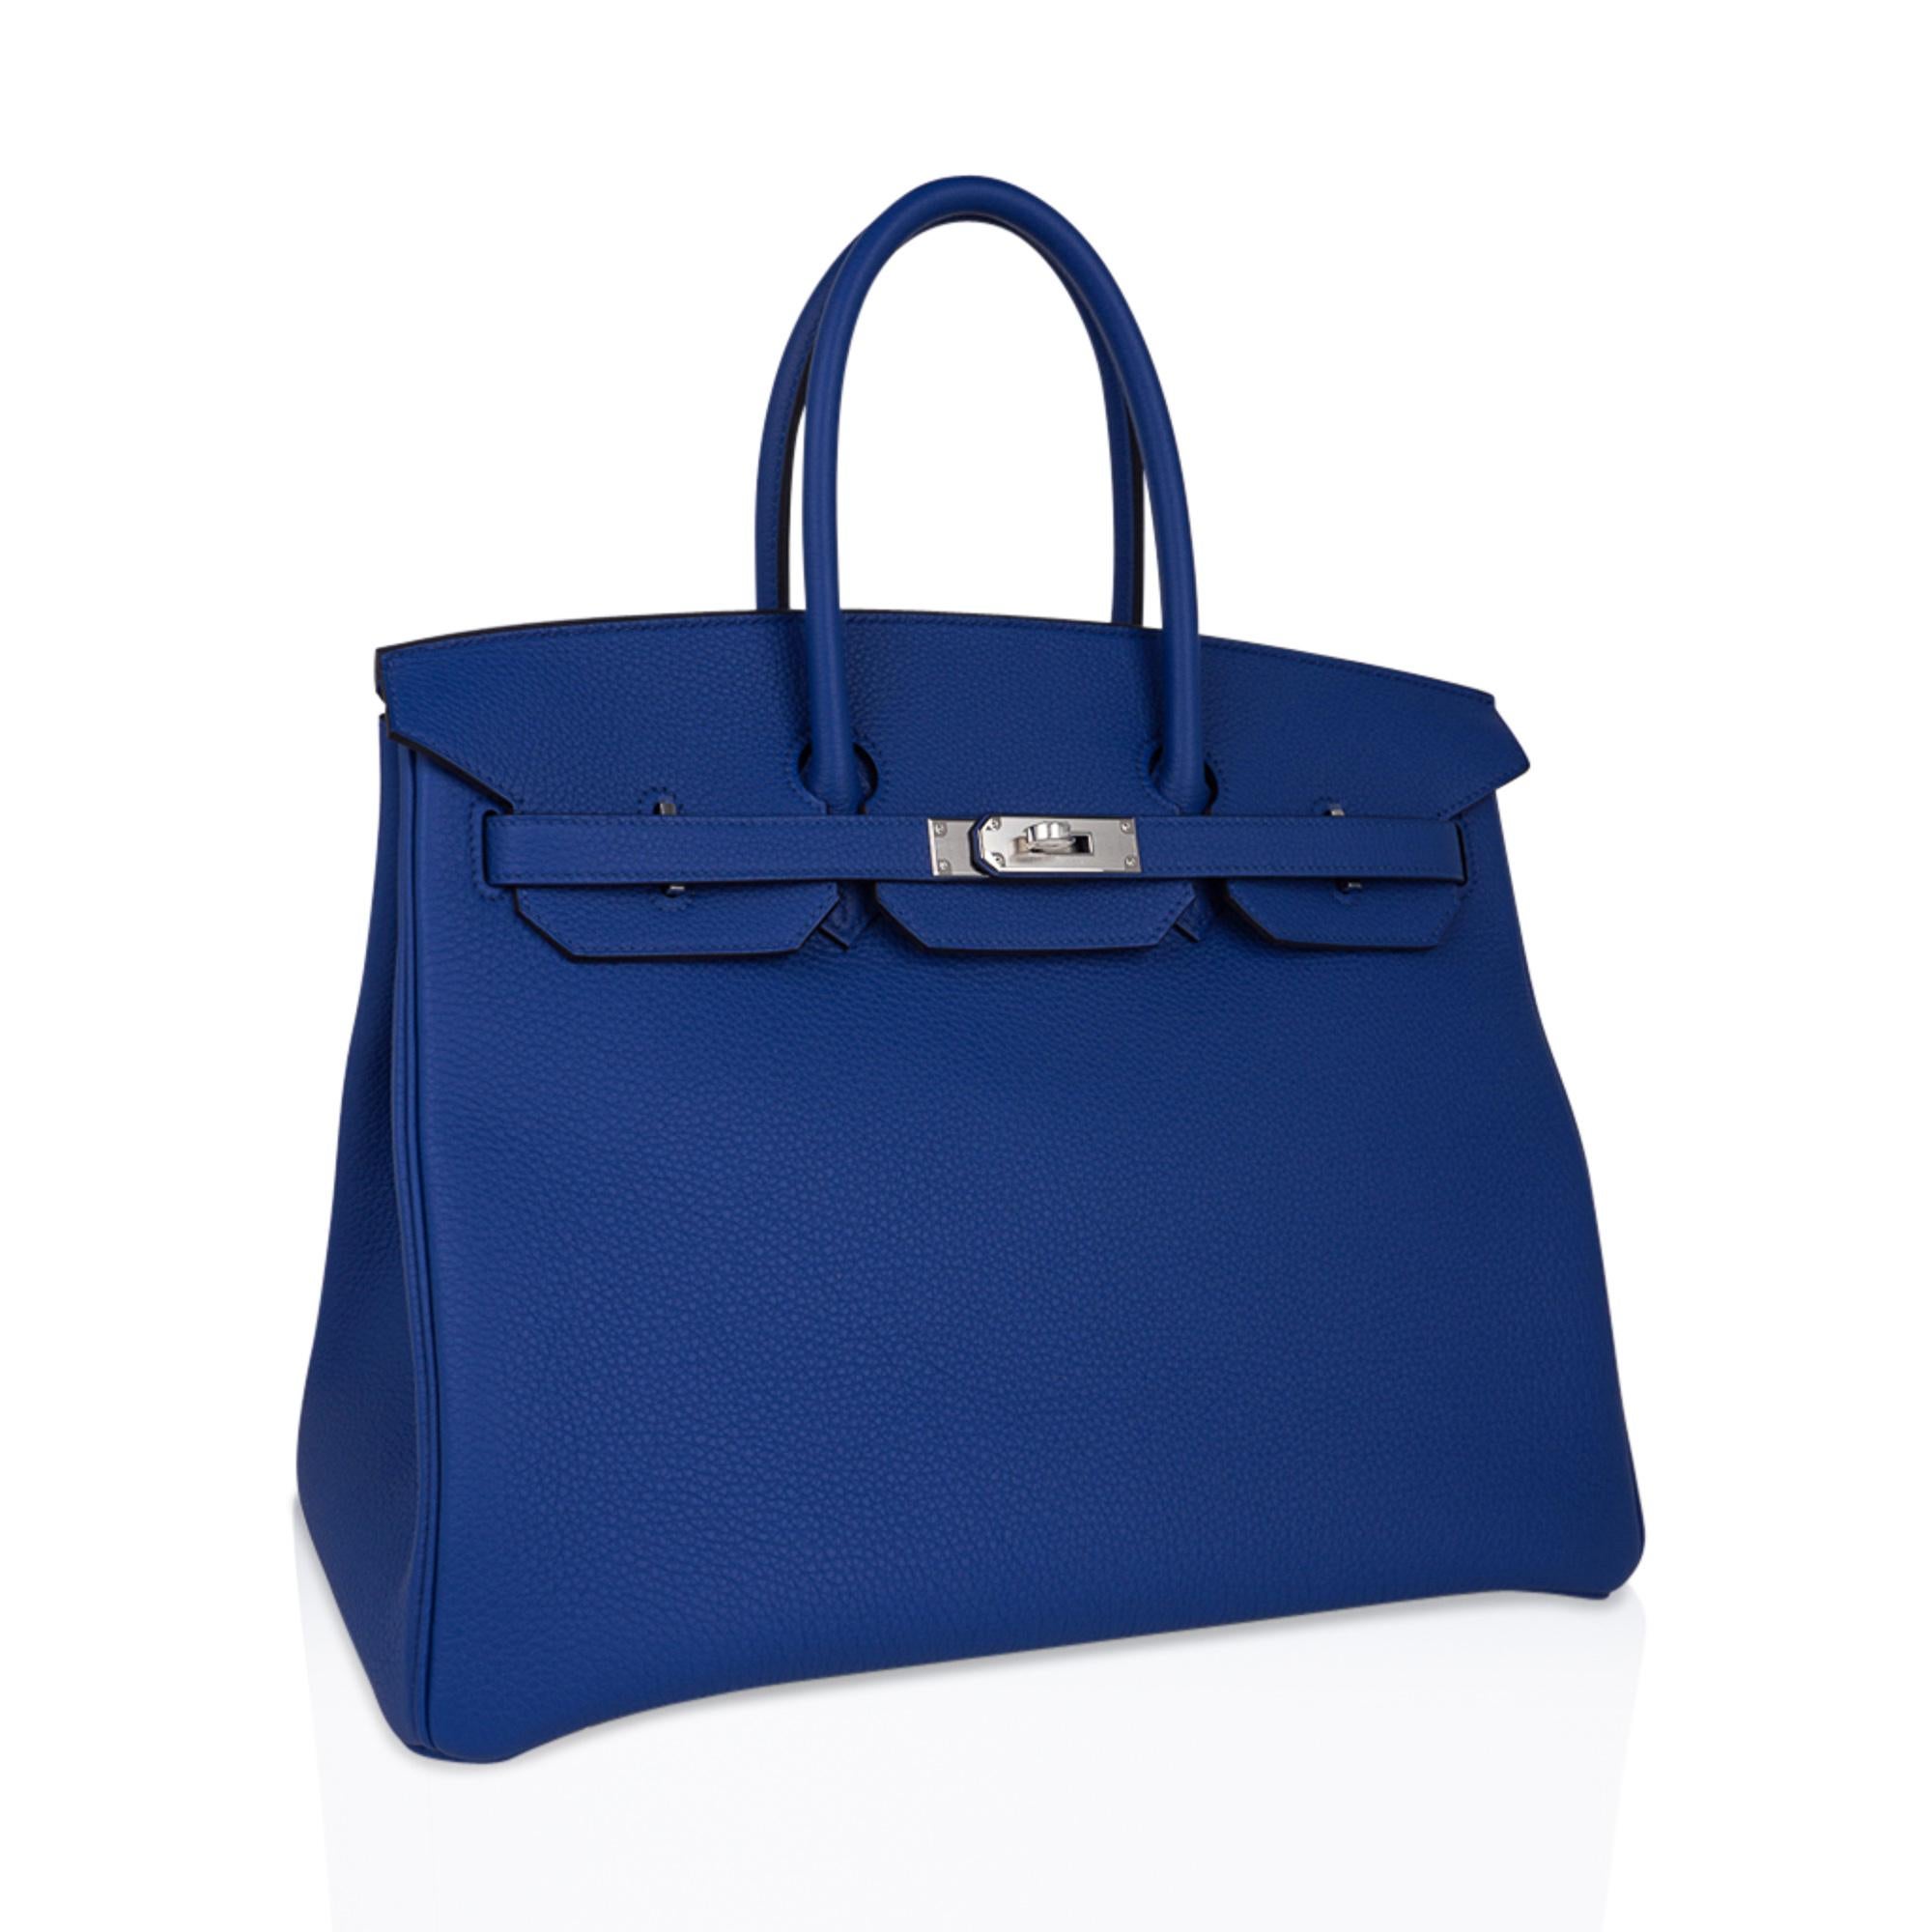 Mightychic propose un sac Hermès Birkin 35 authentique garanti, dans un coloris bleu vif.  France.
Ce sac Hermès Birkin bleu est époustouflant par sa couleur richement saturée.
Le cuir Togo est texturé et très résistant aux rayures.
Frais avec